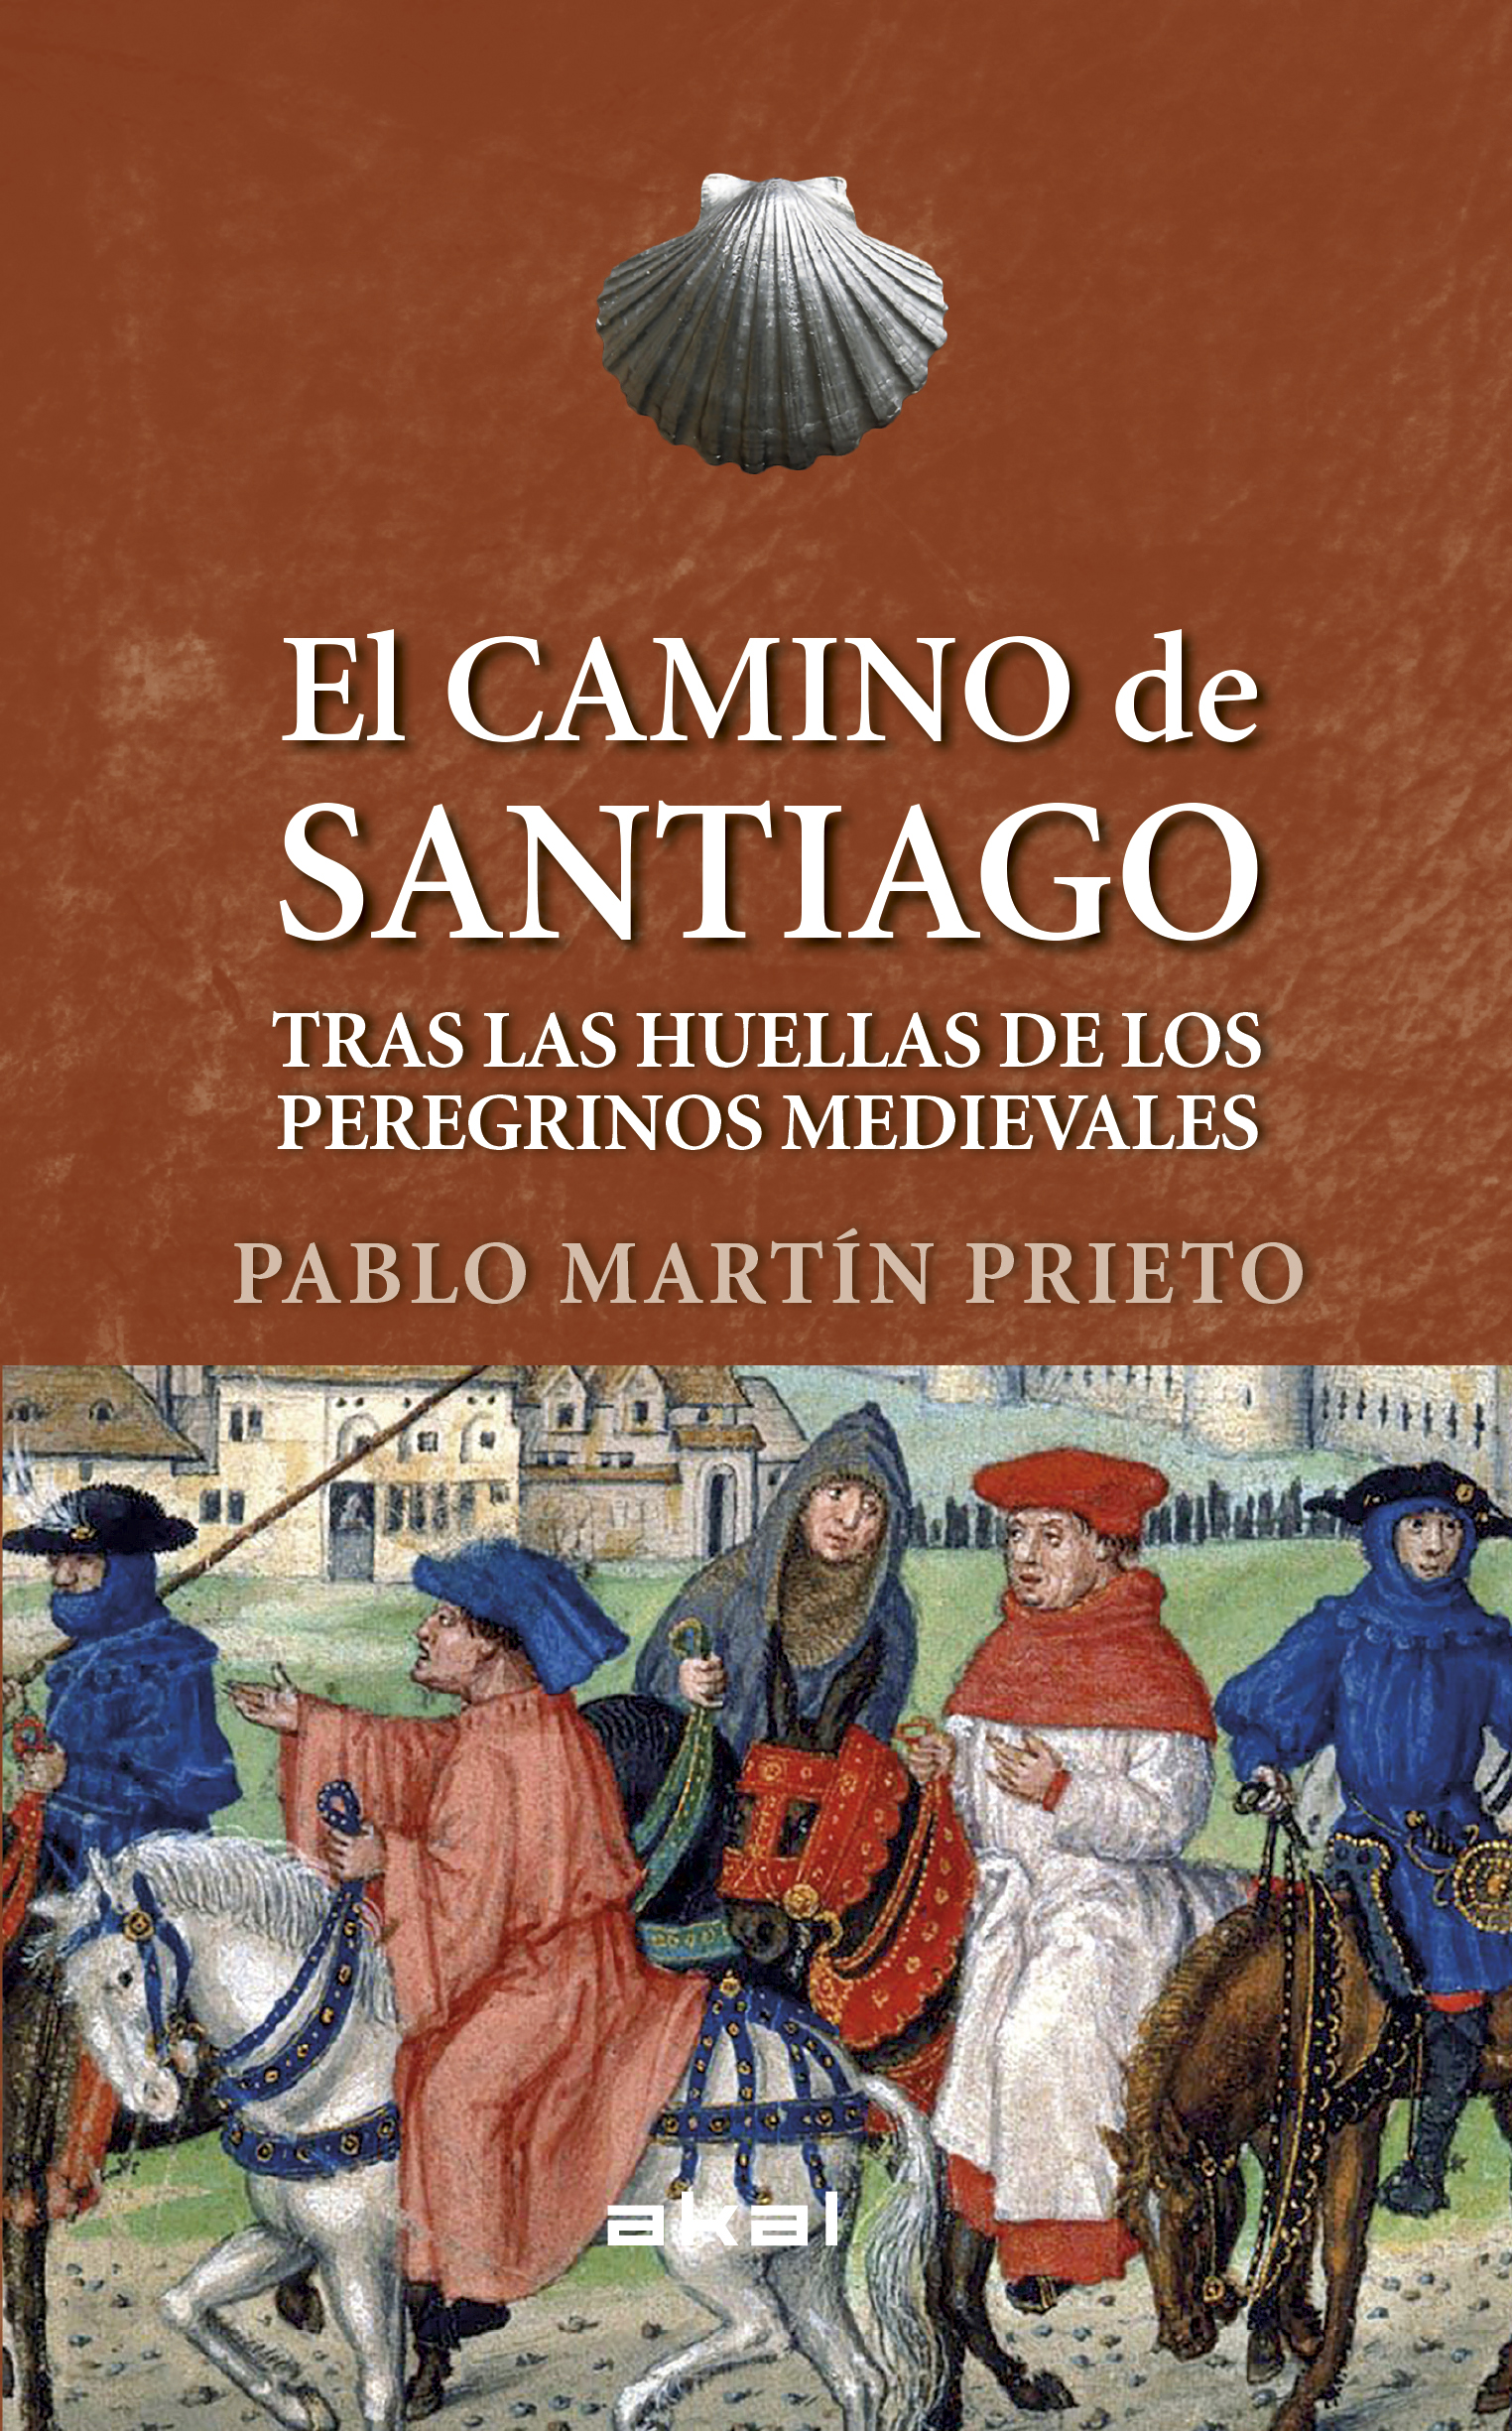 EL CAMINO DE SANTIAGO - Pablo Martín Prieto